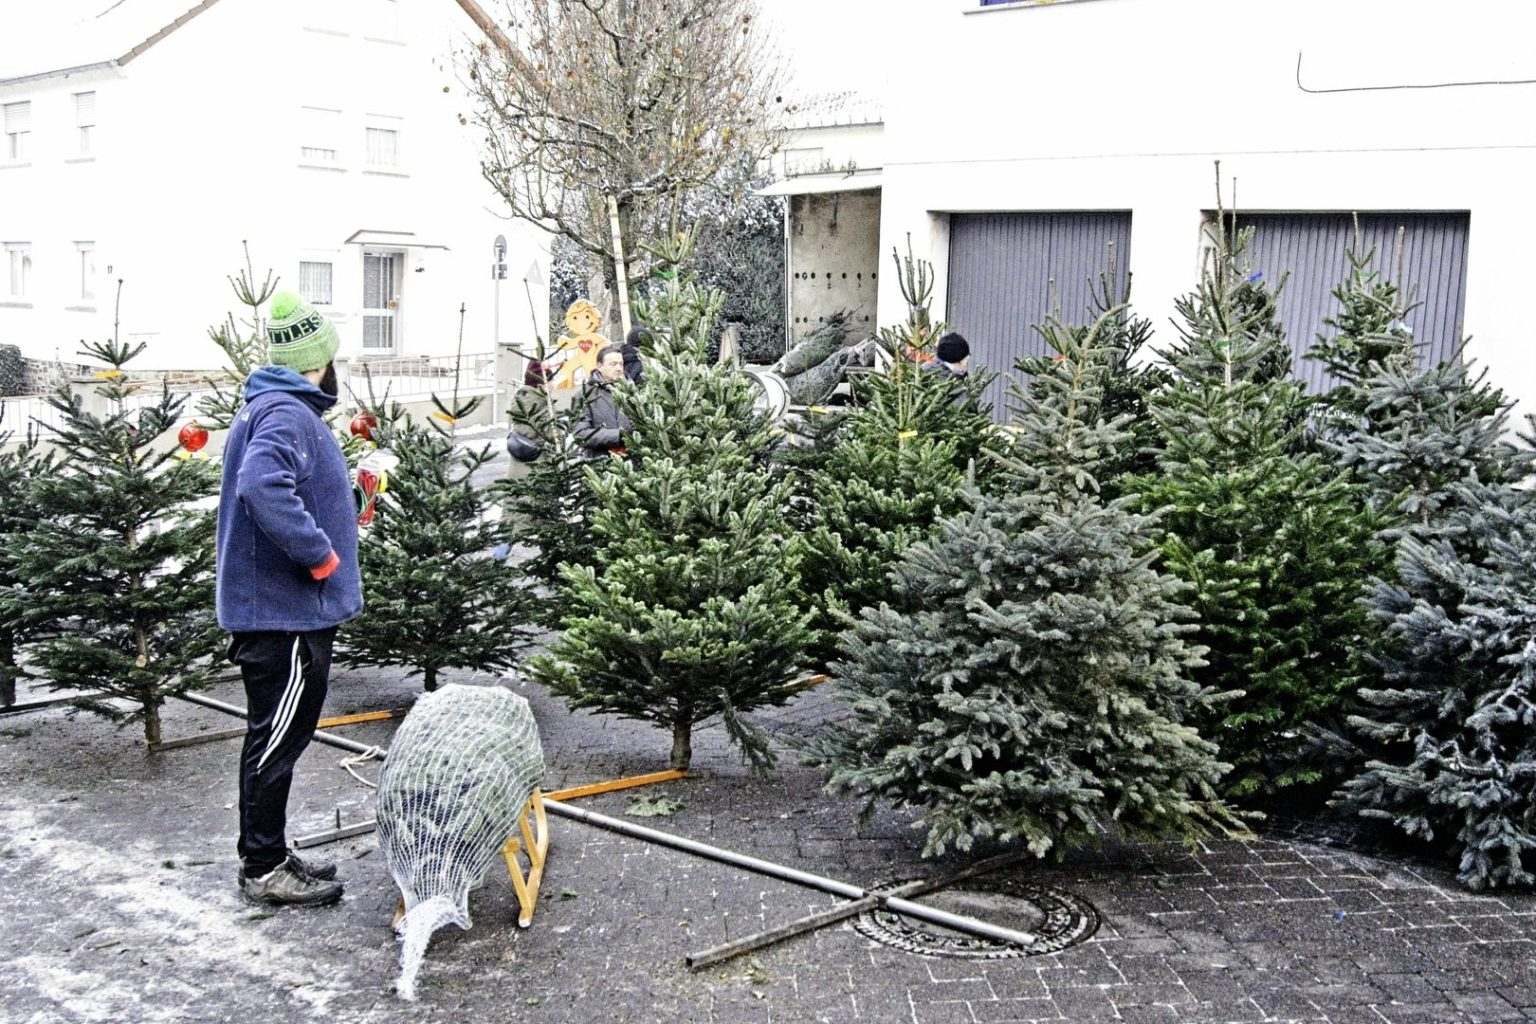 Weihnachtsbaumverkauf